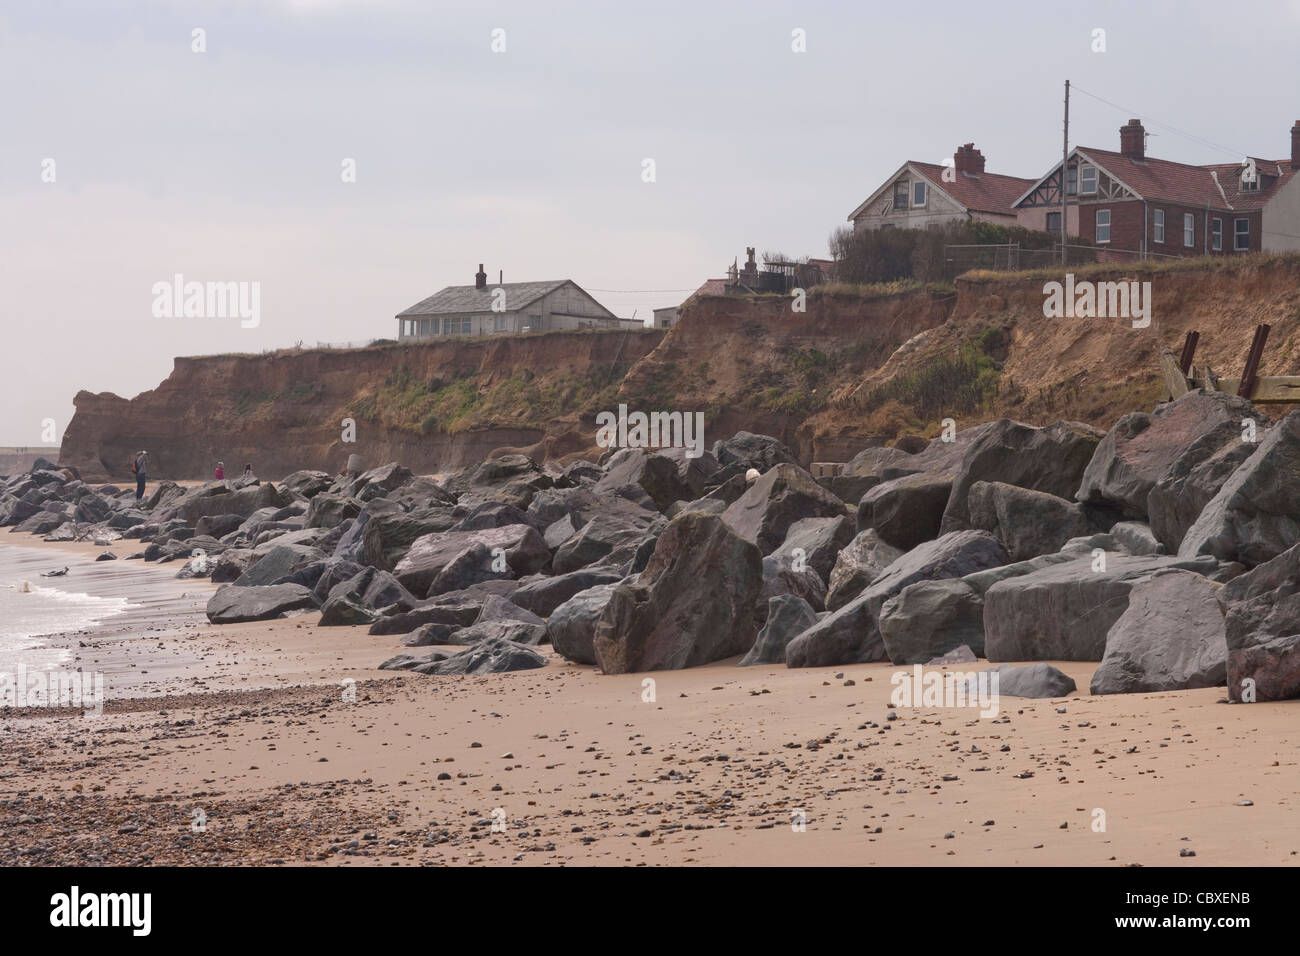 Happisburgh Küste, North Norfolk, East Anglia. Erosion der Felsen an der Nordsee; Häuser auf Klippe, importierte Felsen unten. Stockfoto